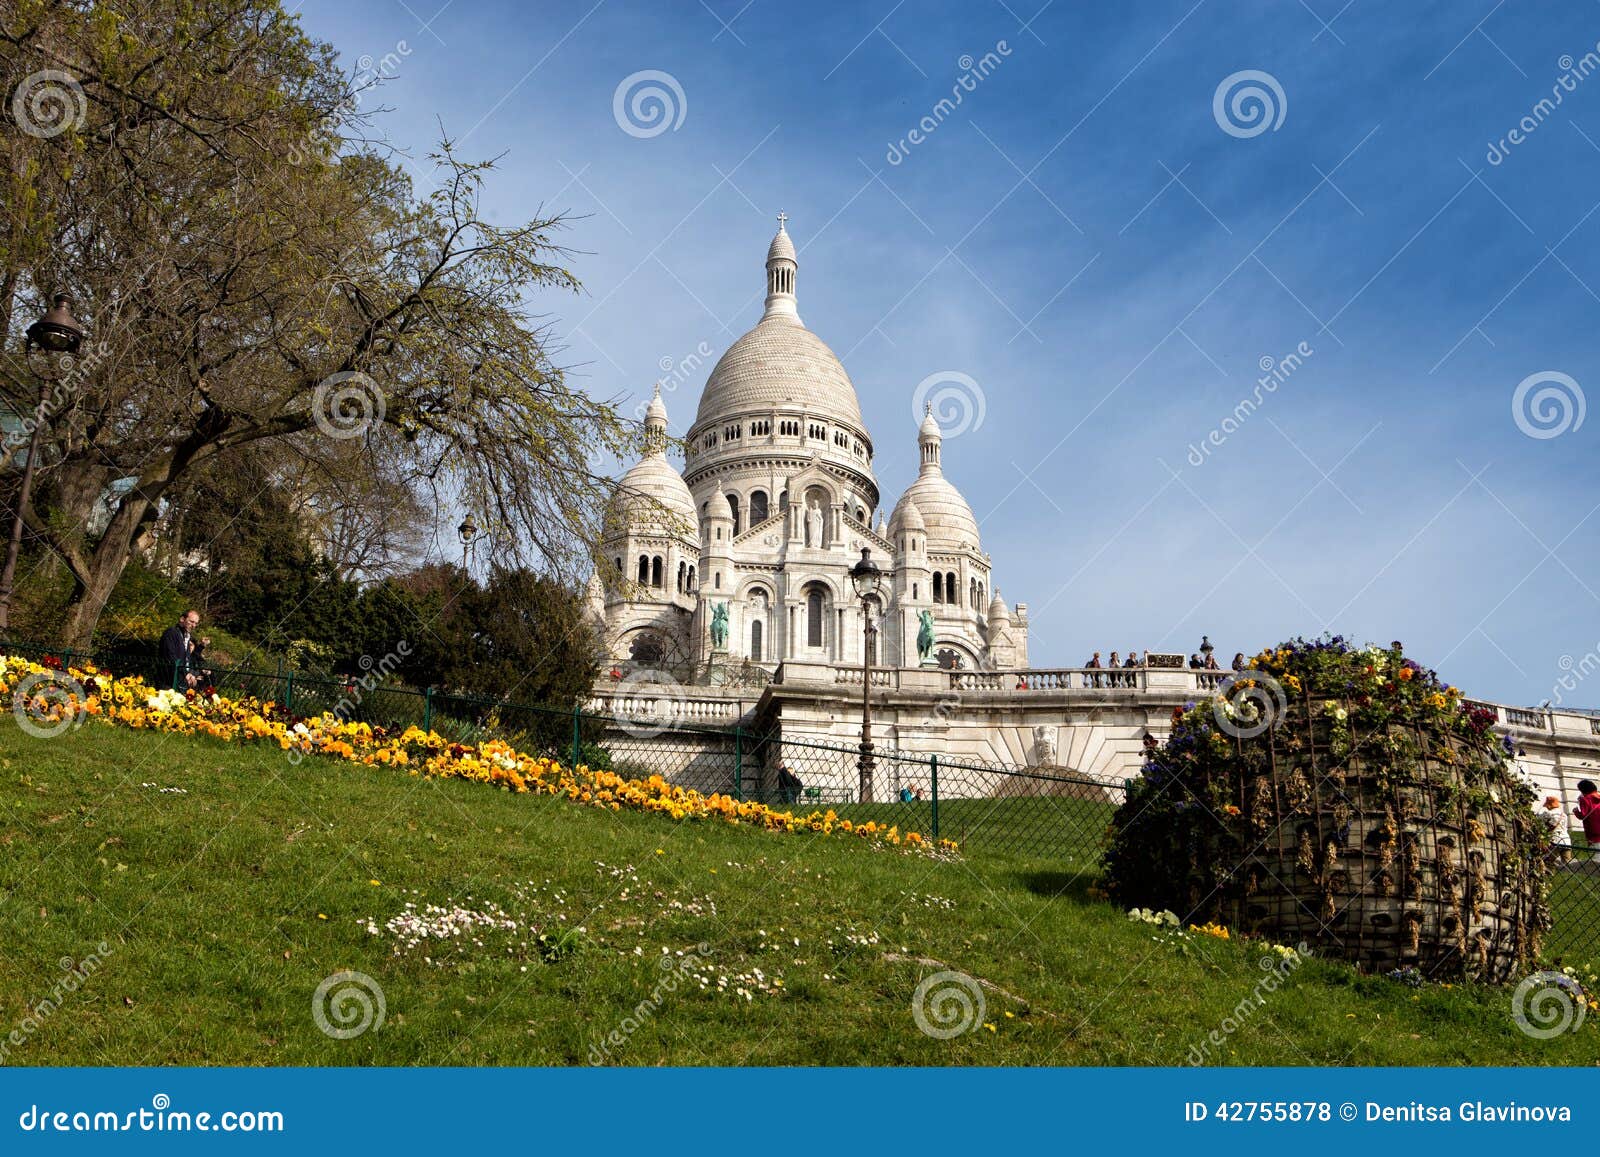 Basiliek Sacre Coeur in Parijs. Een populair oriëntatiepunt, wordt de basiliek gevestigd bij de top van butte Montmartre, het hoogste punt in de stad